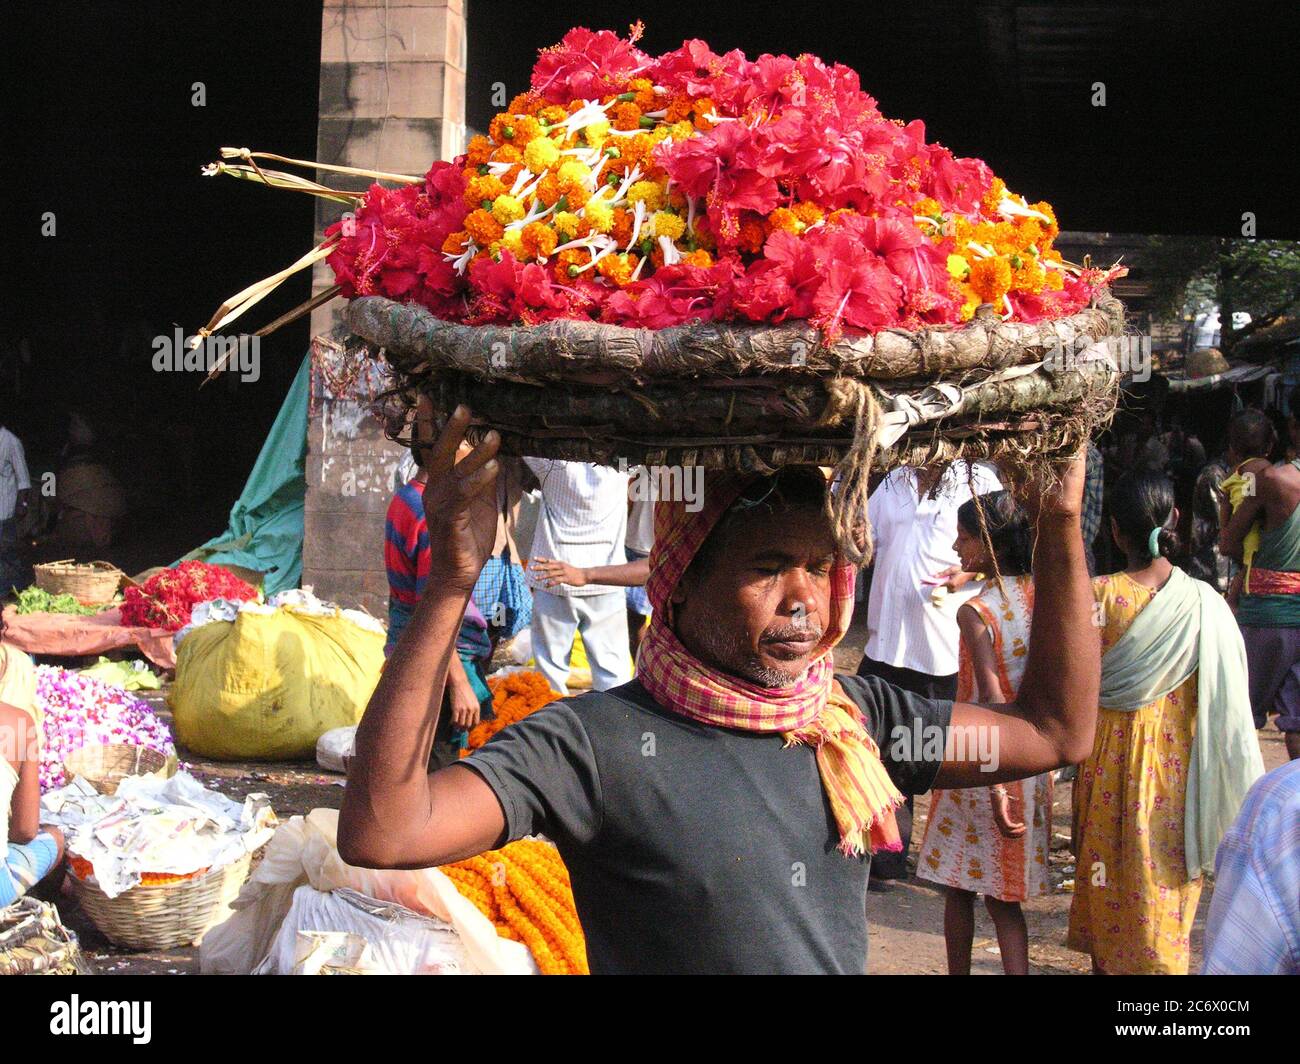 Un vendeur au marché aux fleurs de Mullickghaat, l'un des plus anciens marchés aux fleurs de Kolkata, en Inde. 5 novembre 2007. Banque D'Images